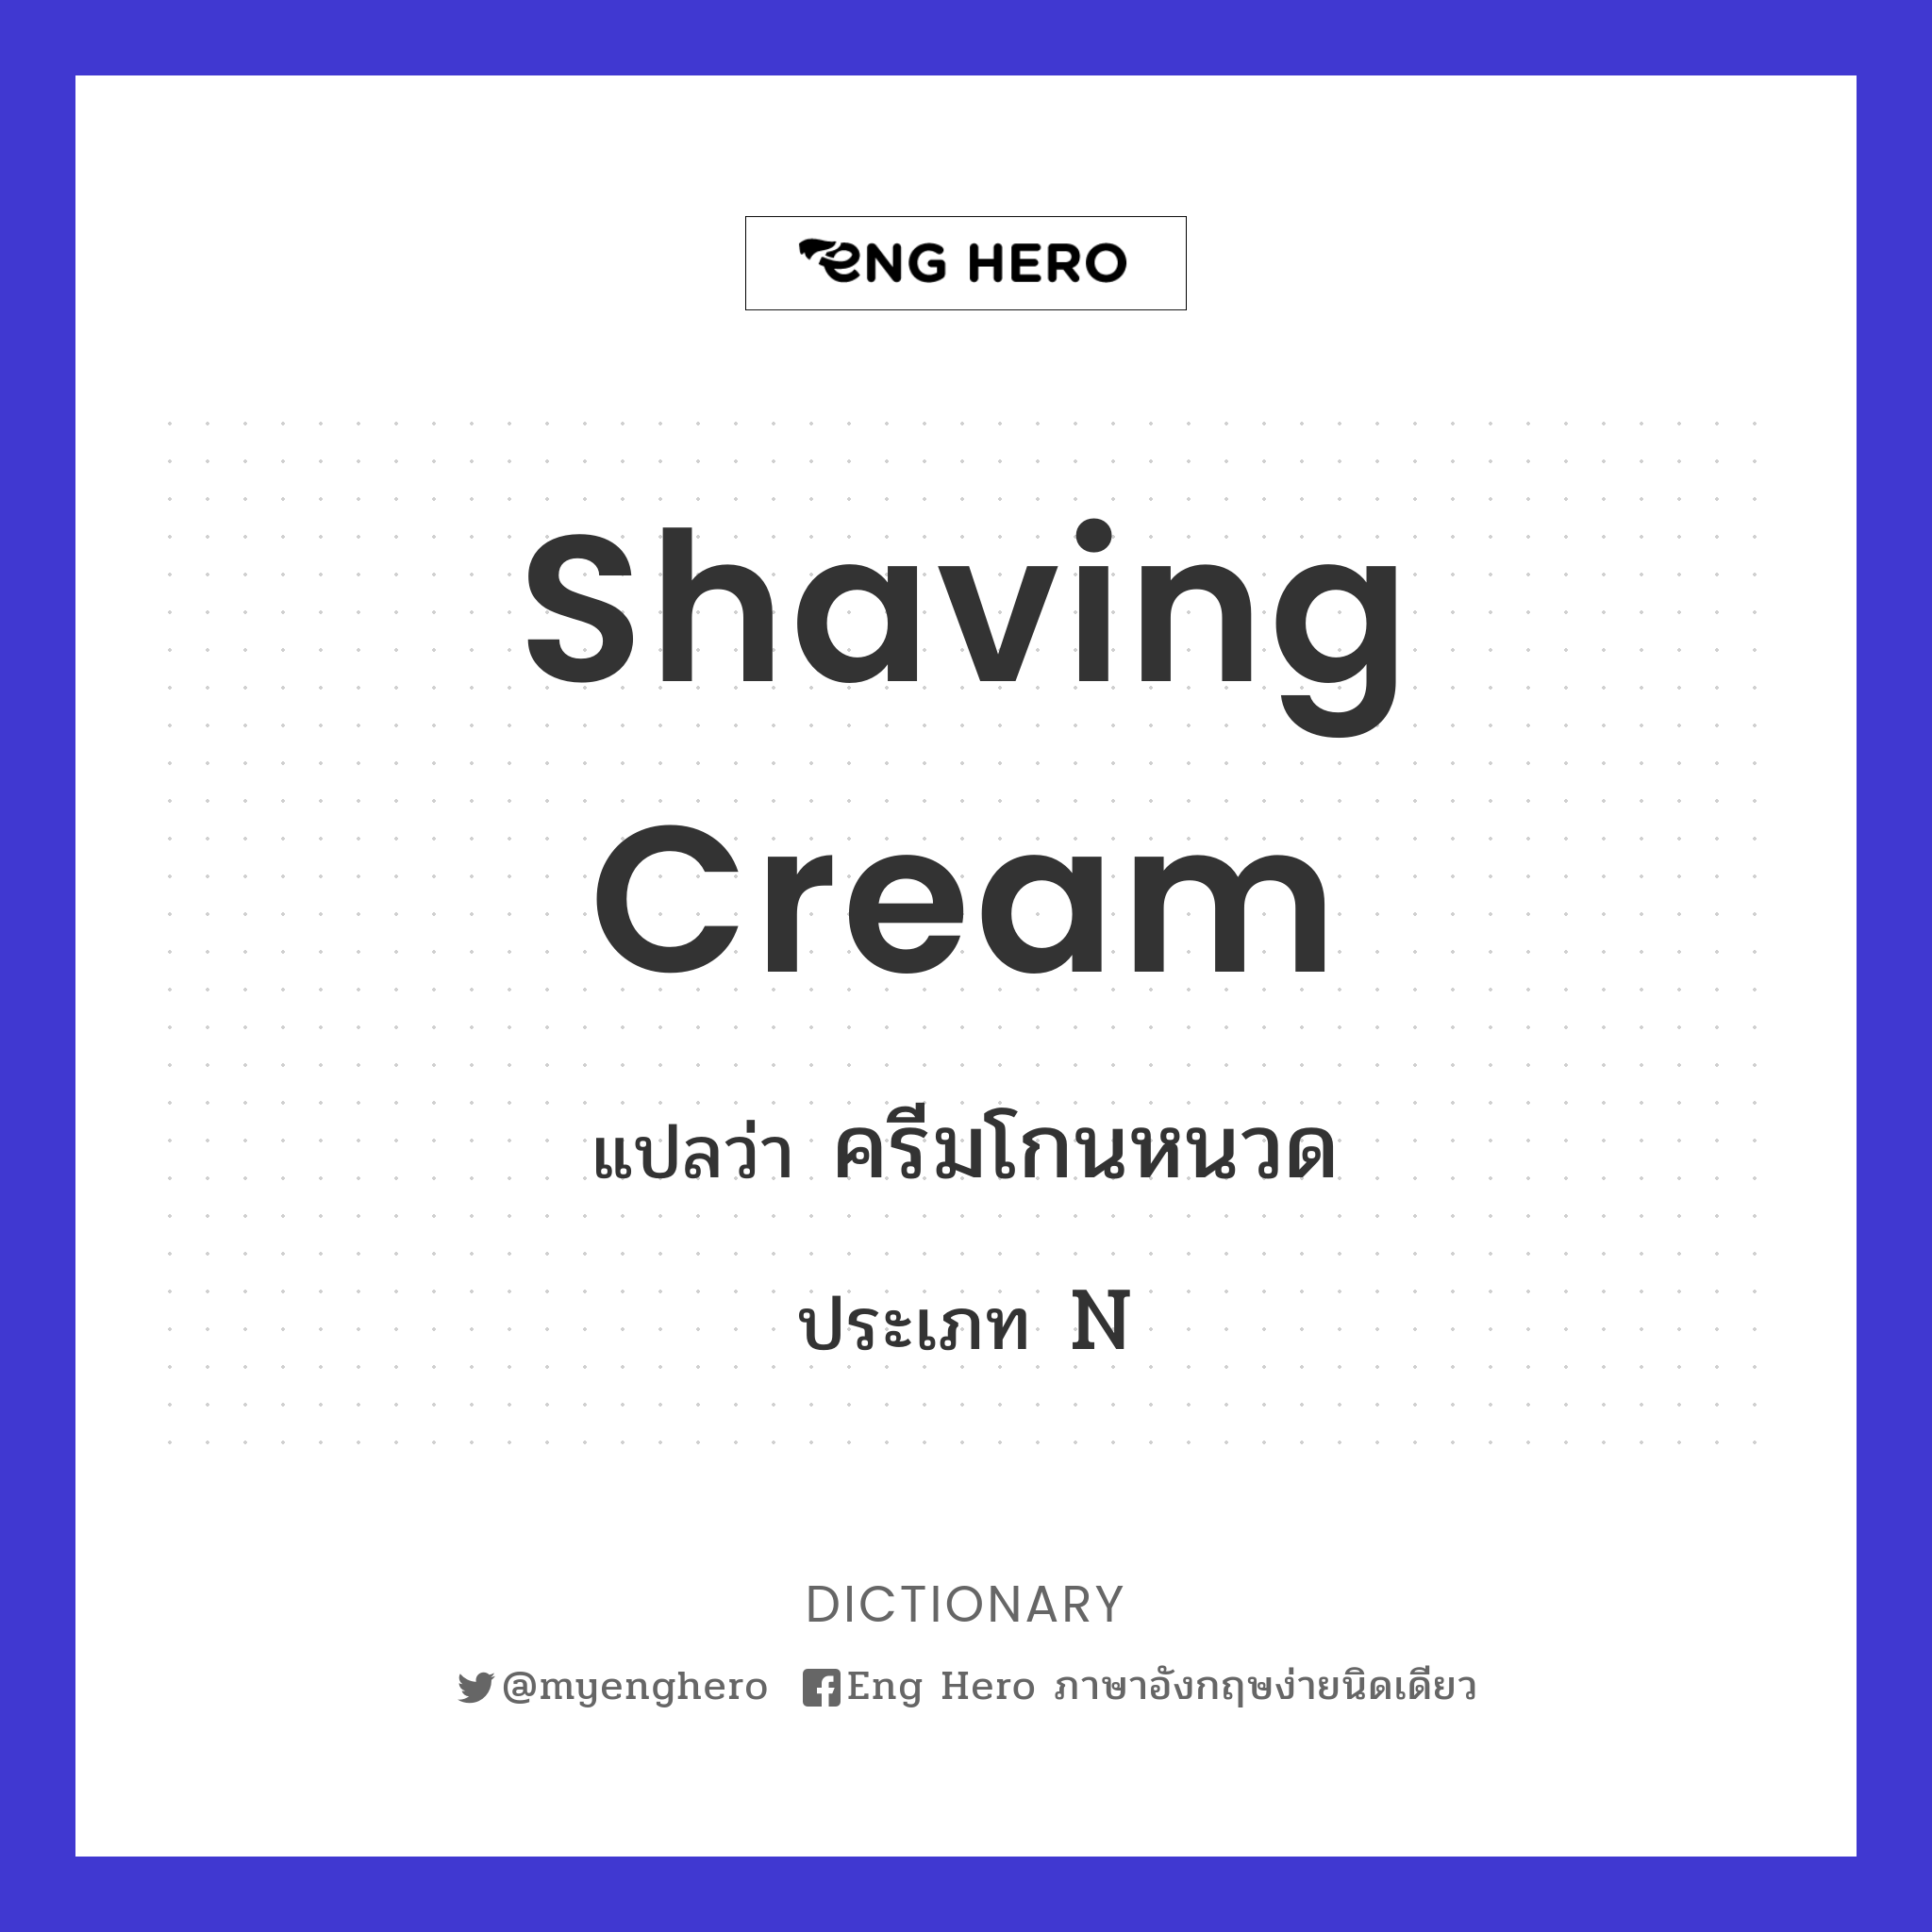 shaving cream